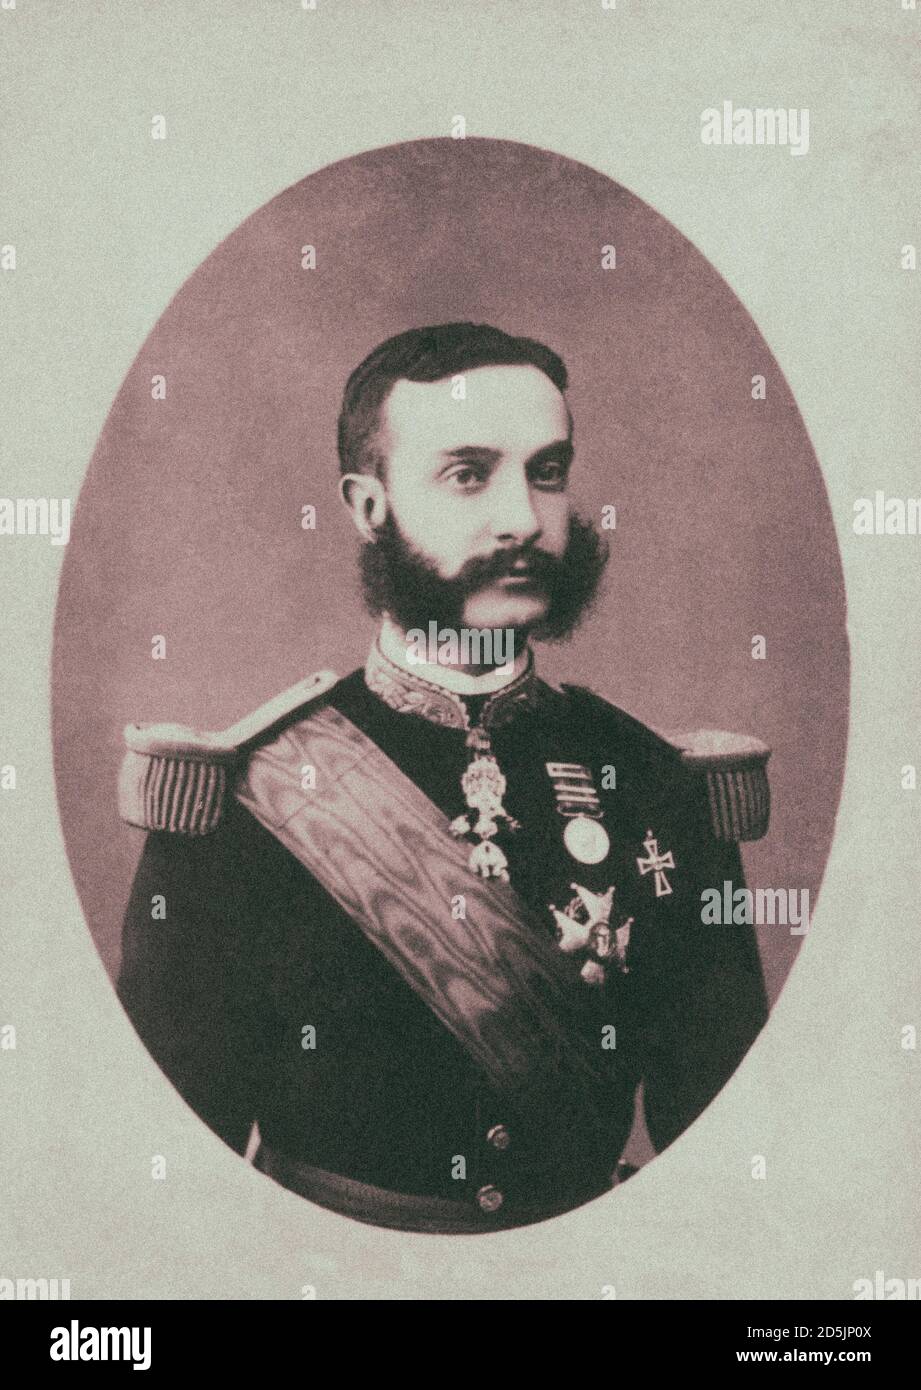 Alfonso XII (1857 – 1885), también conocido como el Pacificador o el Peacemaker, fue Rey de España, reinando desde 1874 hasta 1885. Después de una revolución ese depo Foto de stock